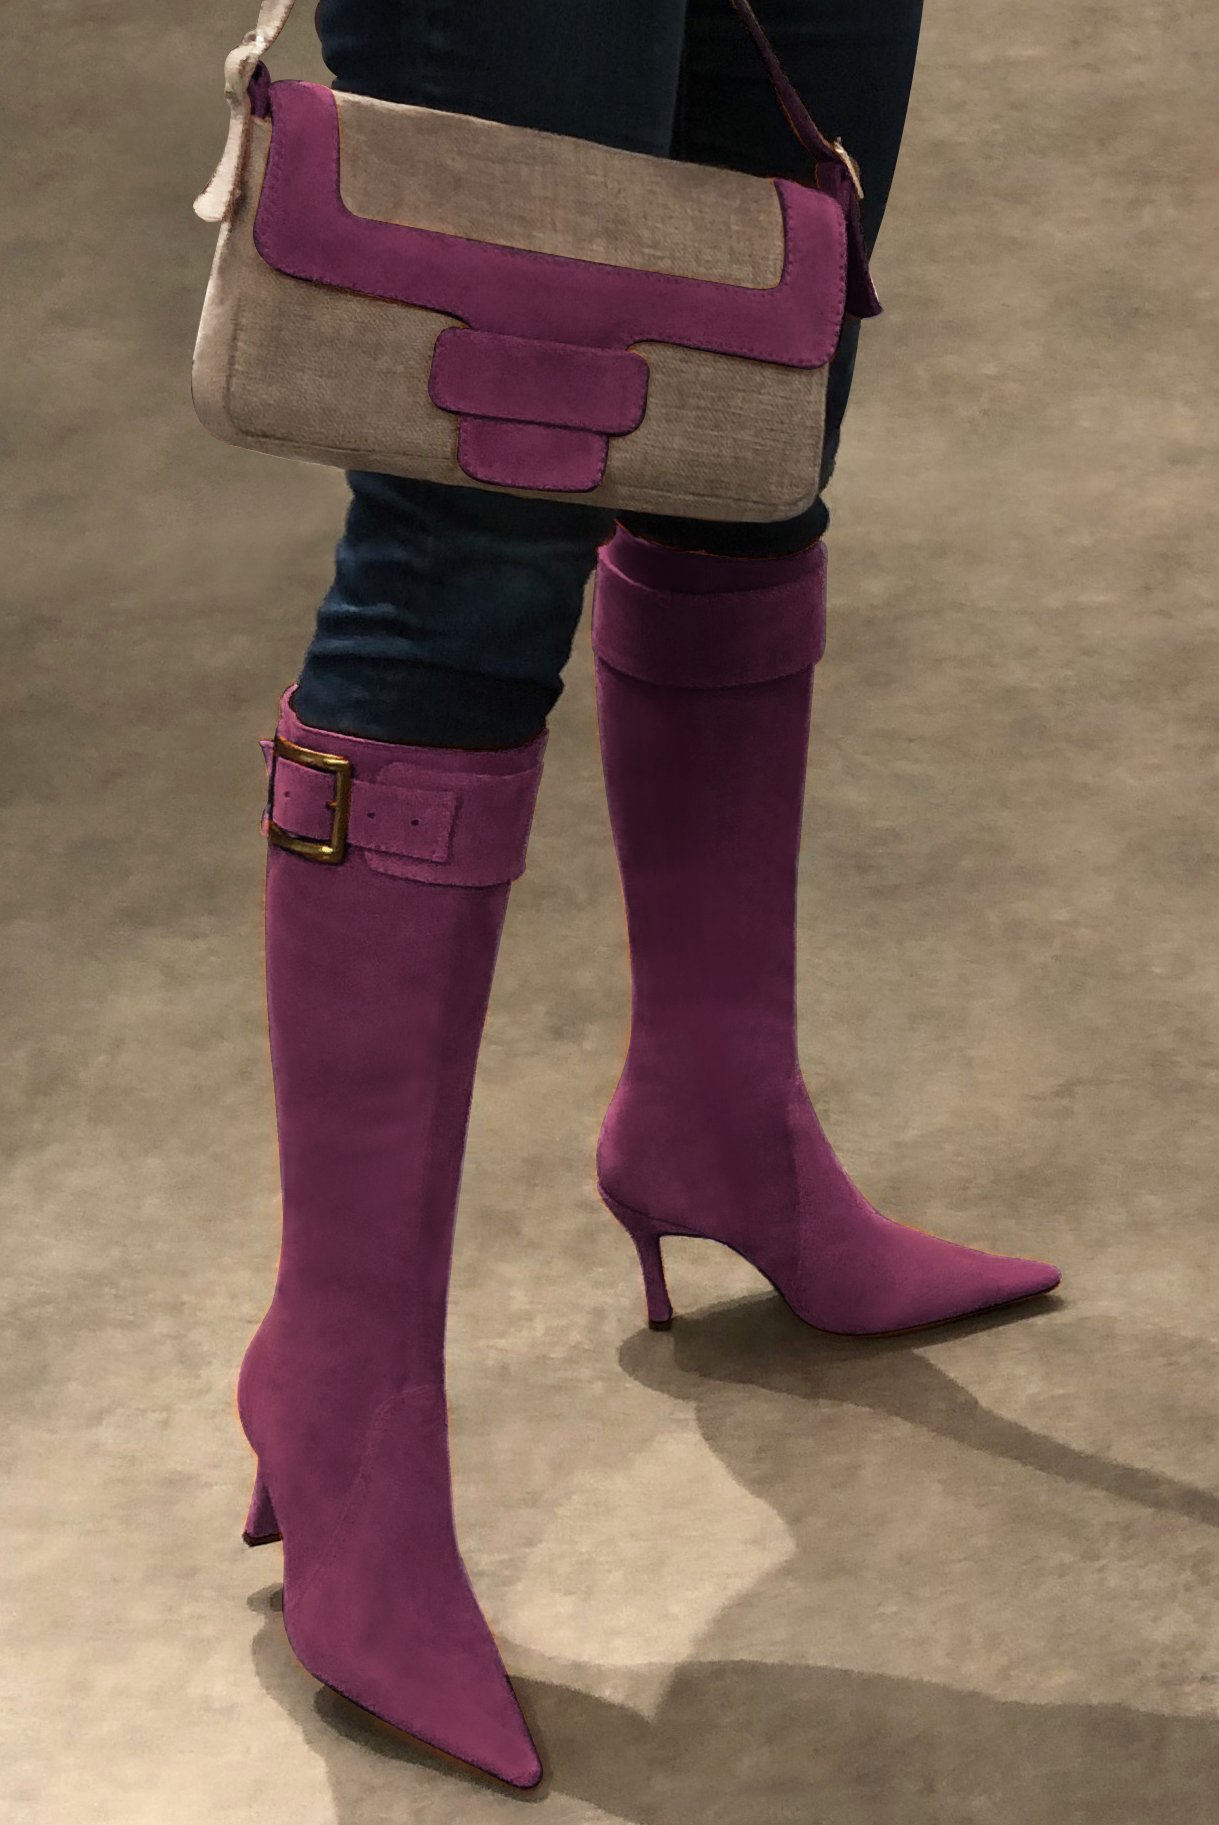 Tan beige and mulberry purple women's dress handbag, matching pumps and belts. Worn view - Florence KOOIJMAN